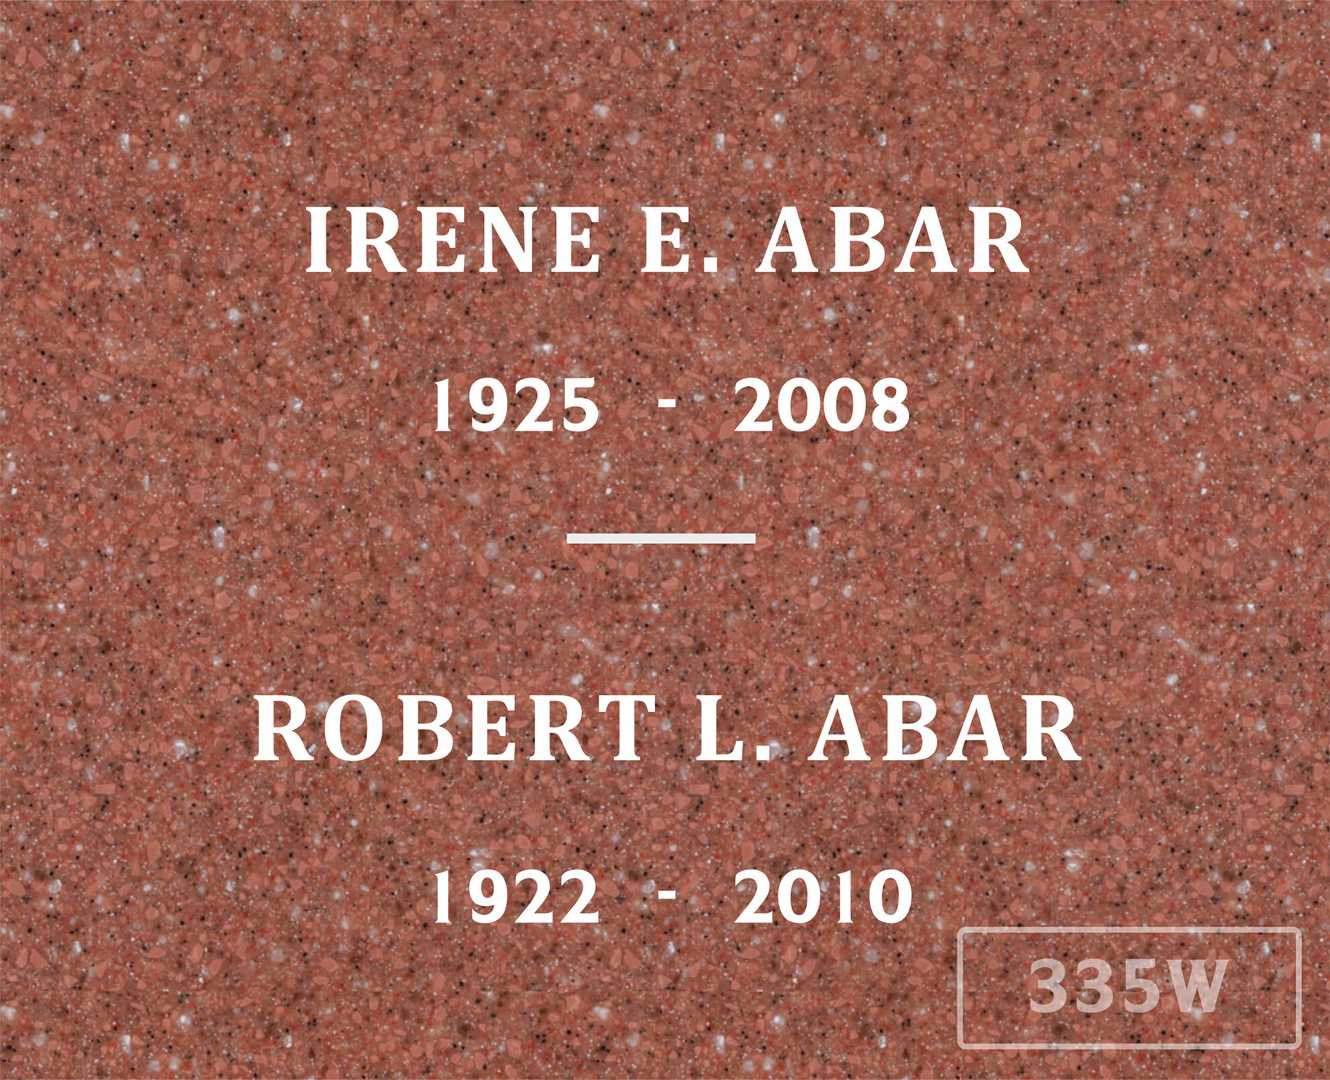 Robert L. Abar's grave